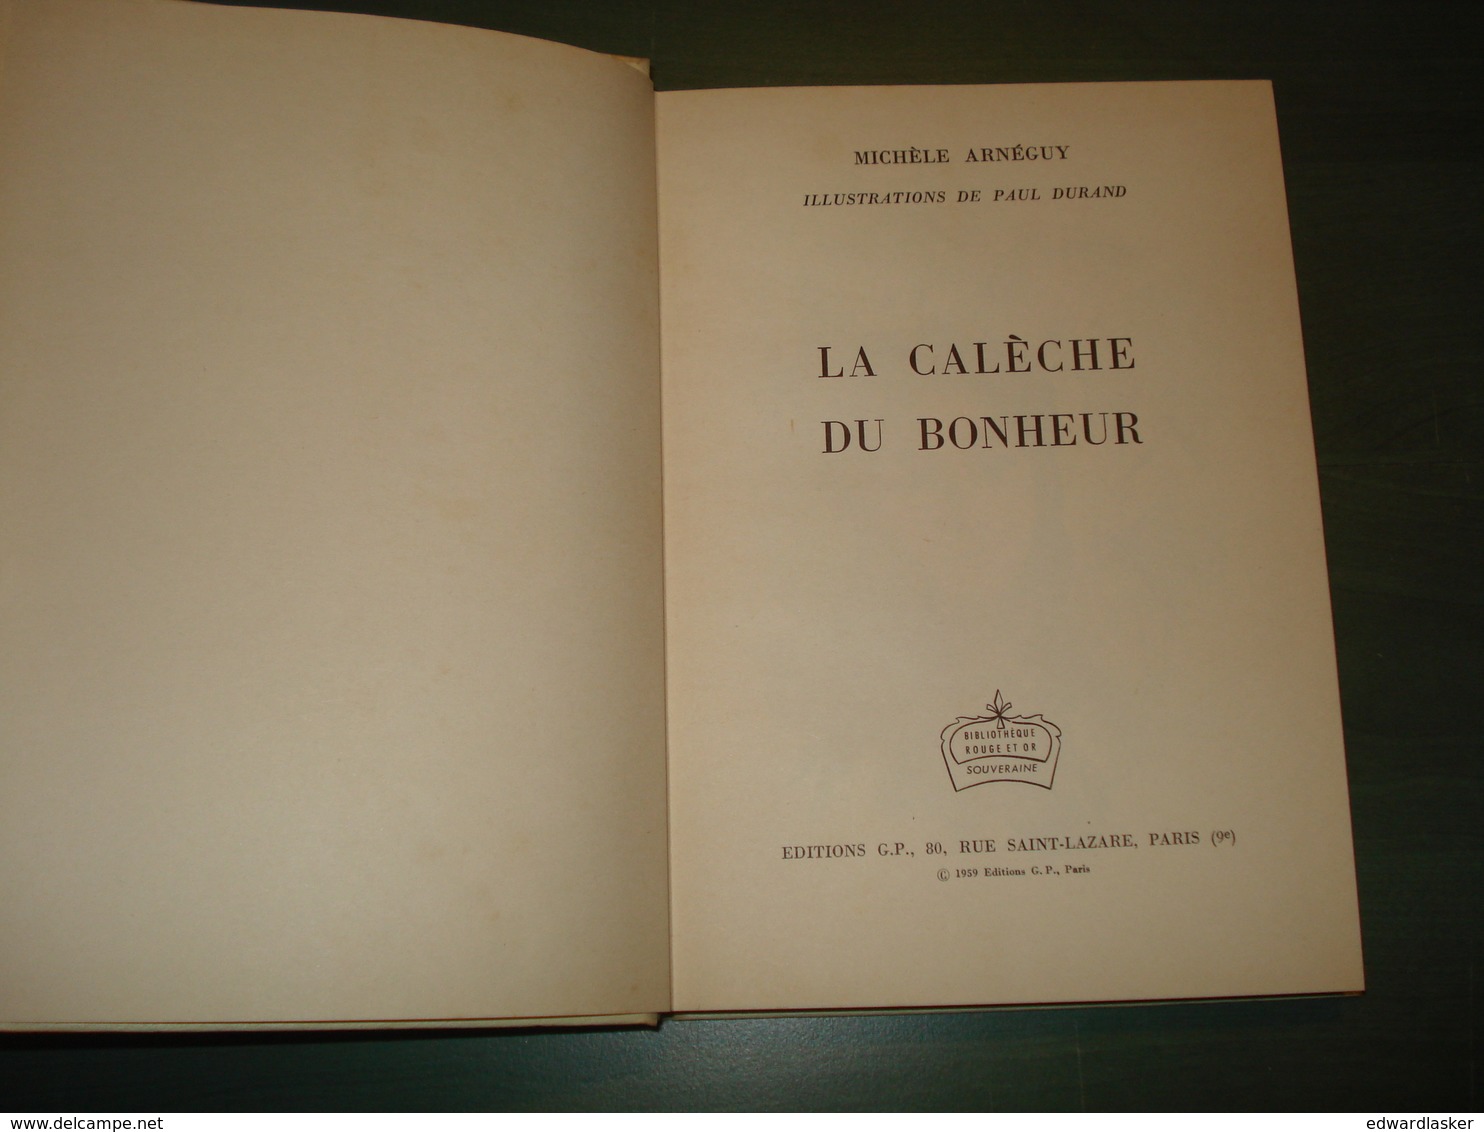 Bibl. ROUGE ET OR SOUVERAINE n°140 : La Calèche du Bonheur //Michèle Arnéguy - 1959 - Paul Durand